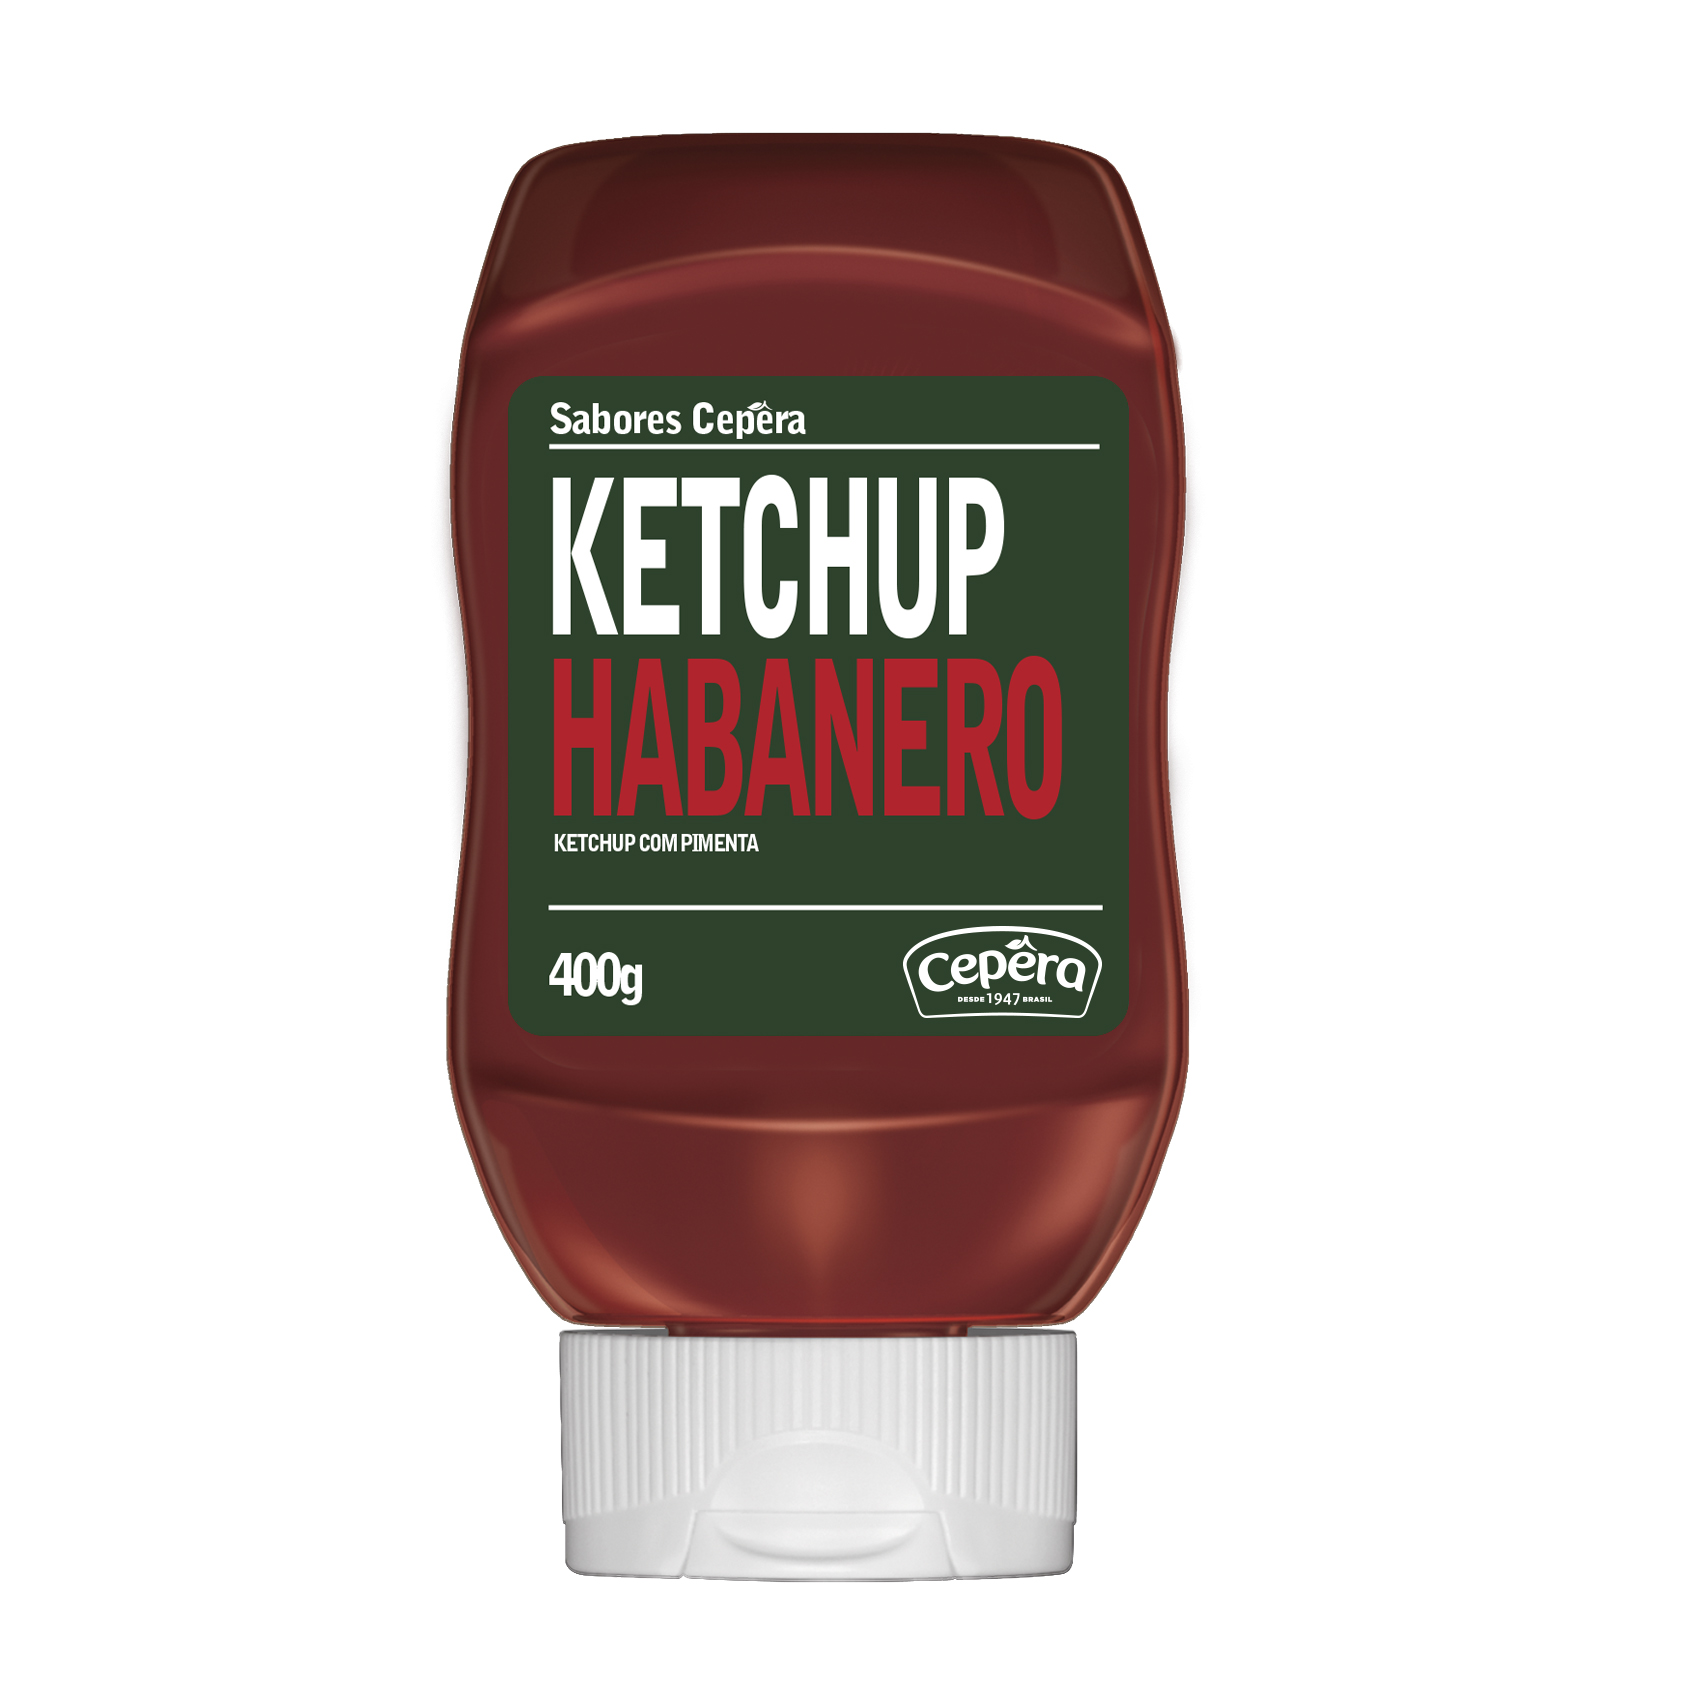 Ketchup Habanero (Sabores Cepêra)